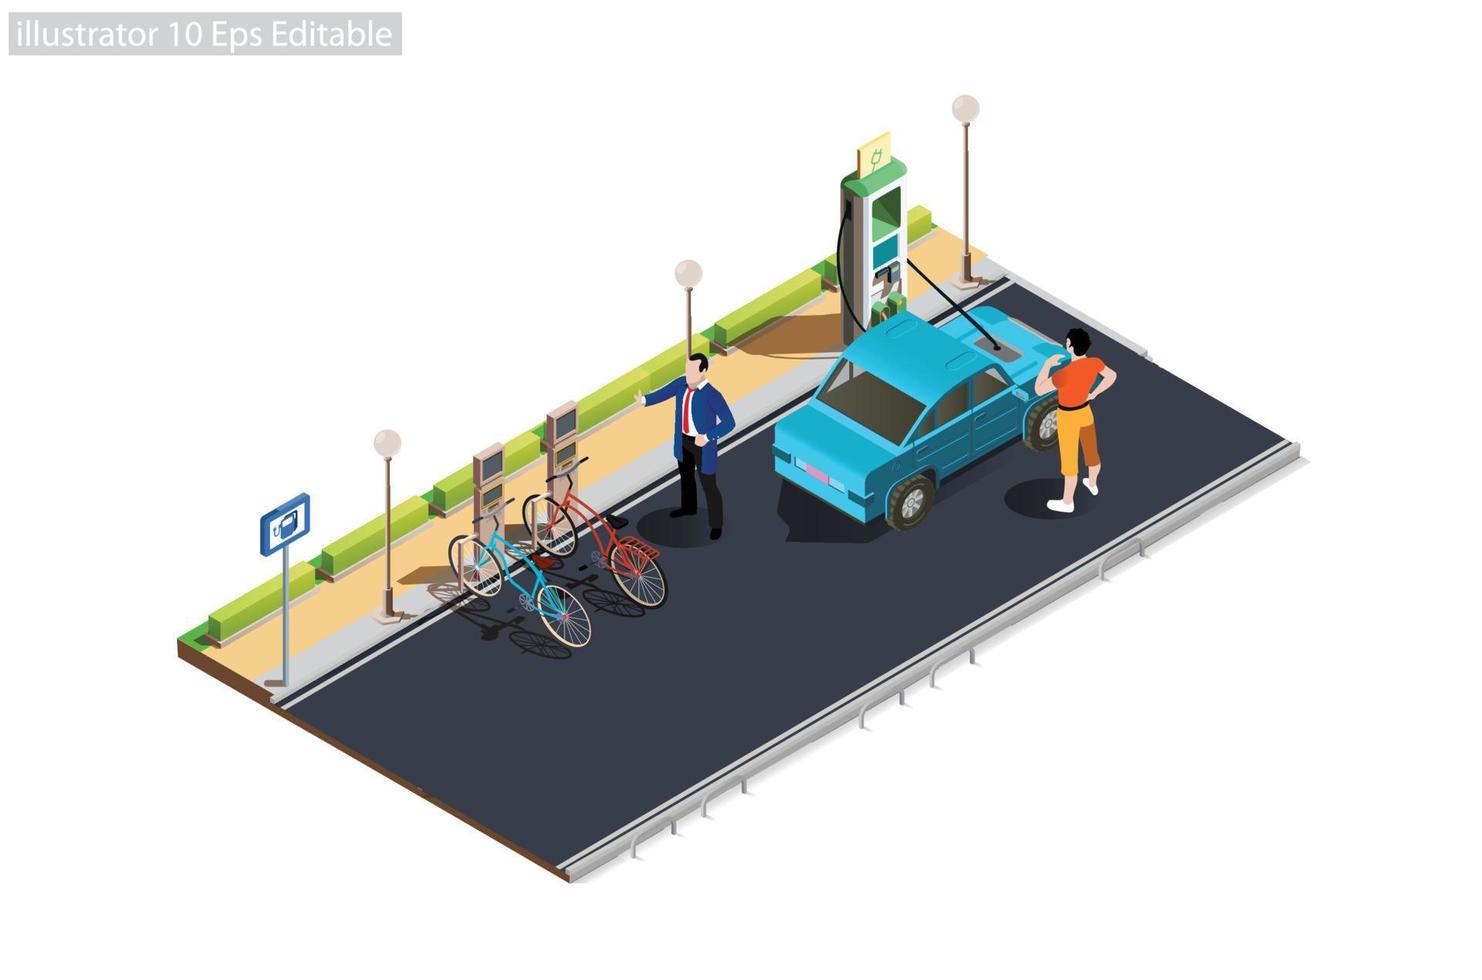 Laden von Elektroautos und Elektrofahrrädern auf leerem Parkplatz mit Schnellladestation. flache vektorillustration lokalisiert auf einem weißen hintergrund vektor